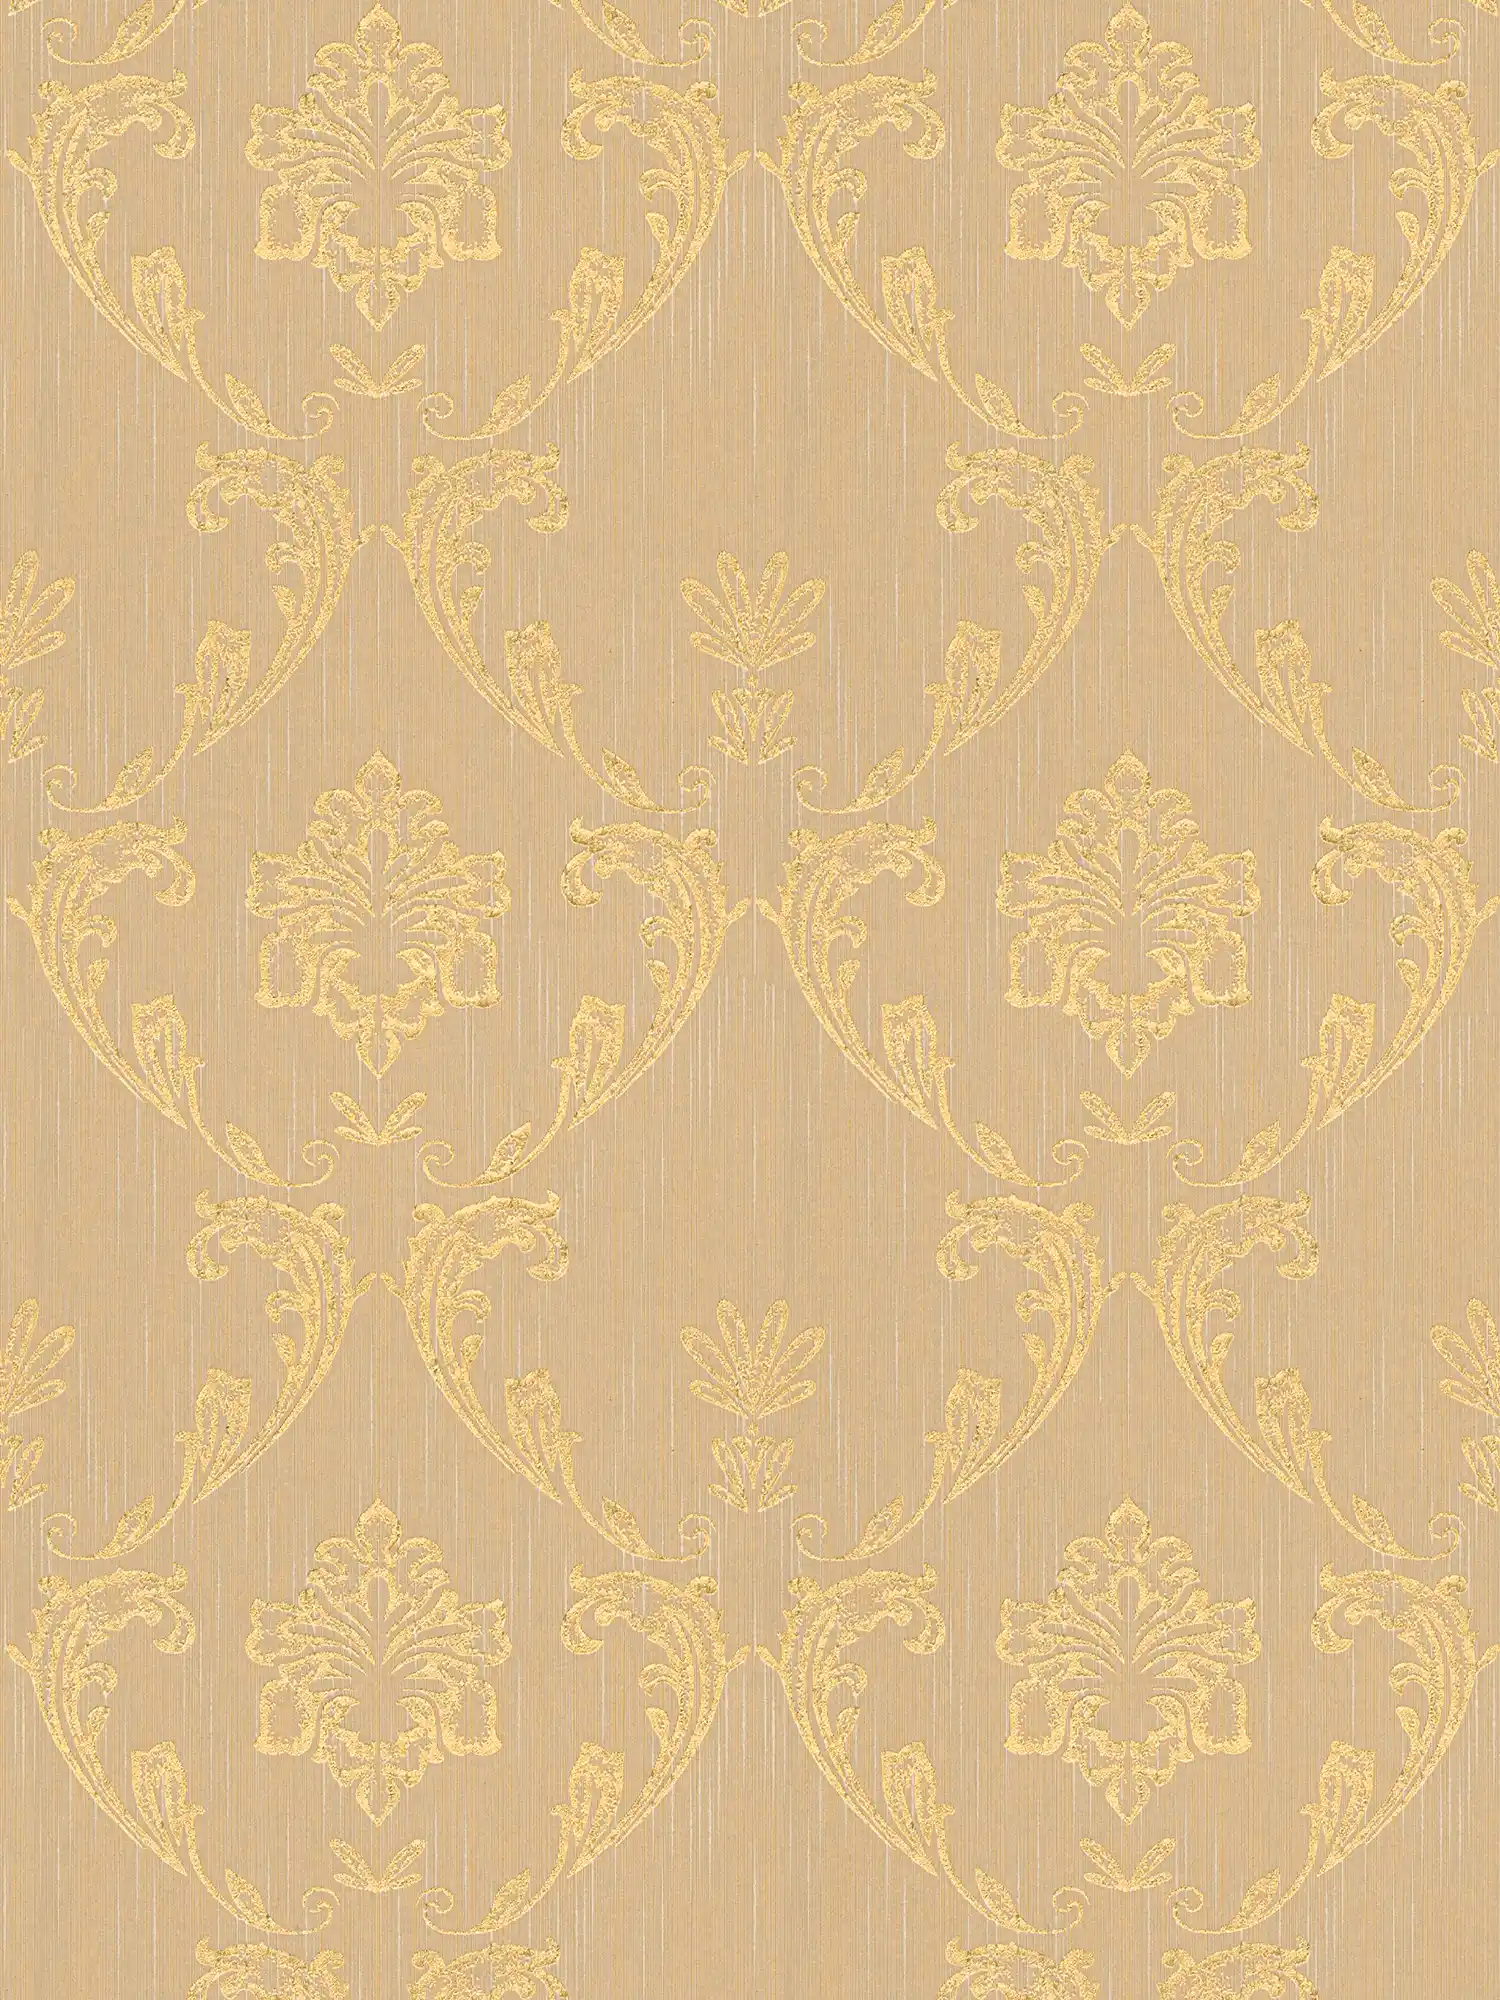 Papel pintado ornamental con elementos florales en oro - oro, beige
